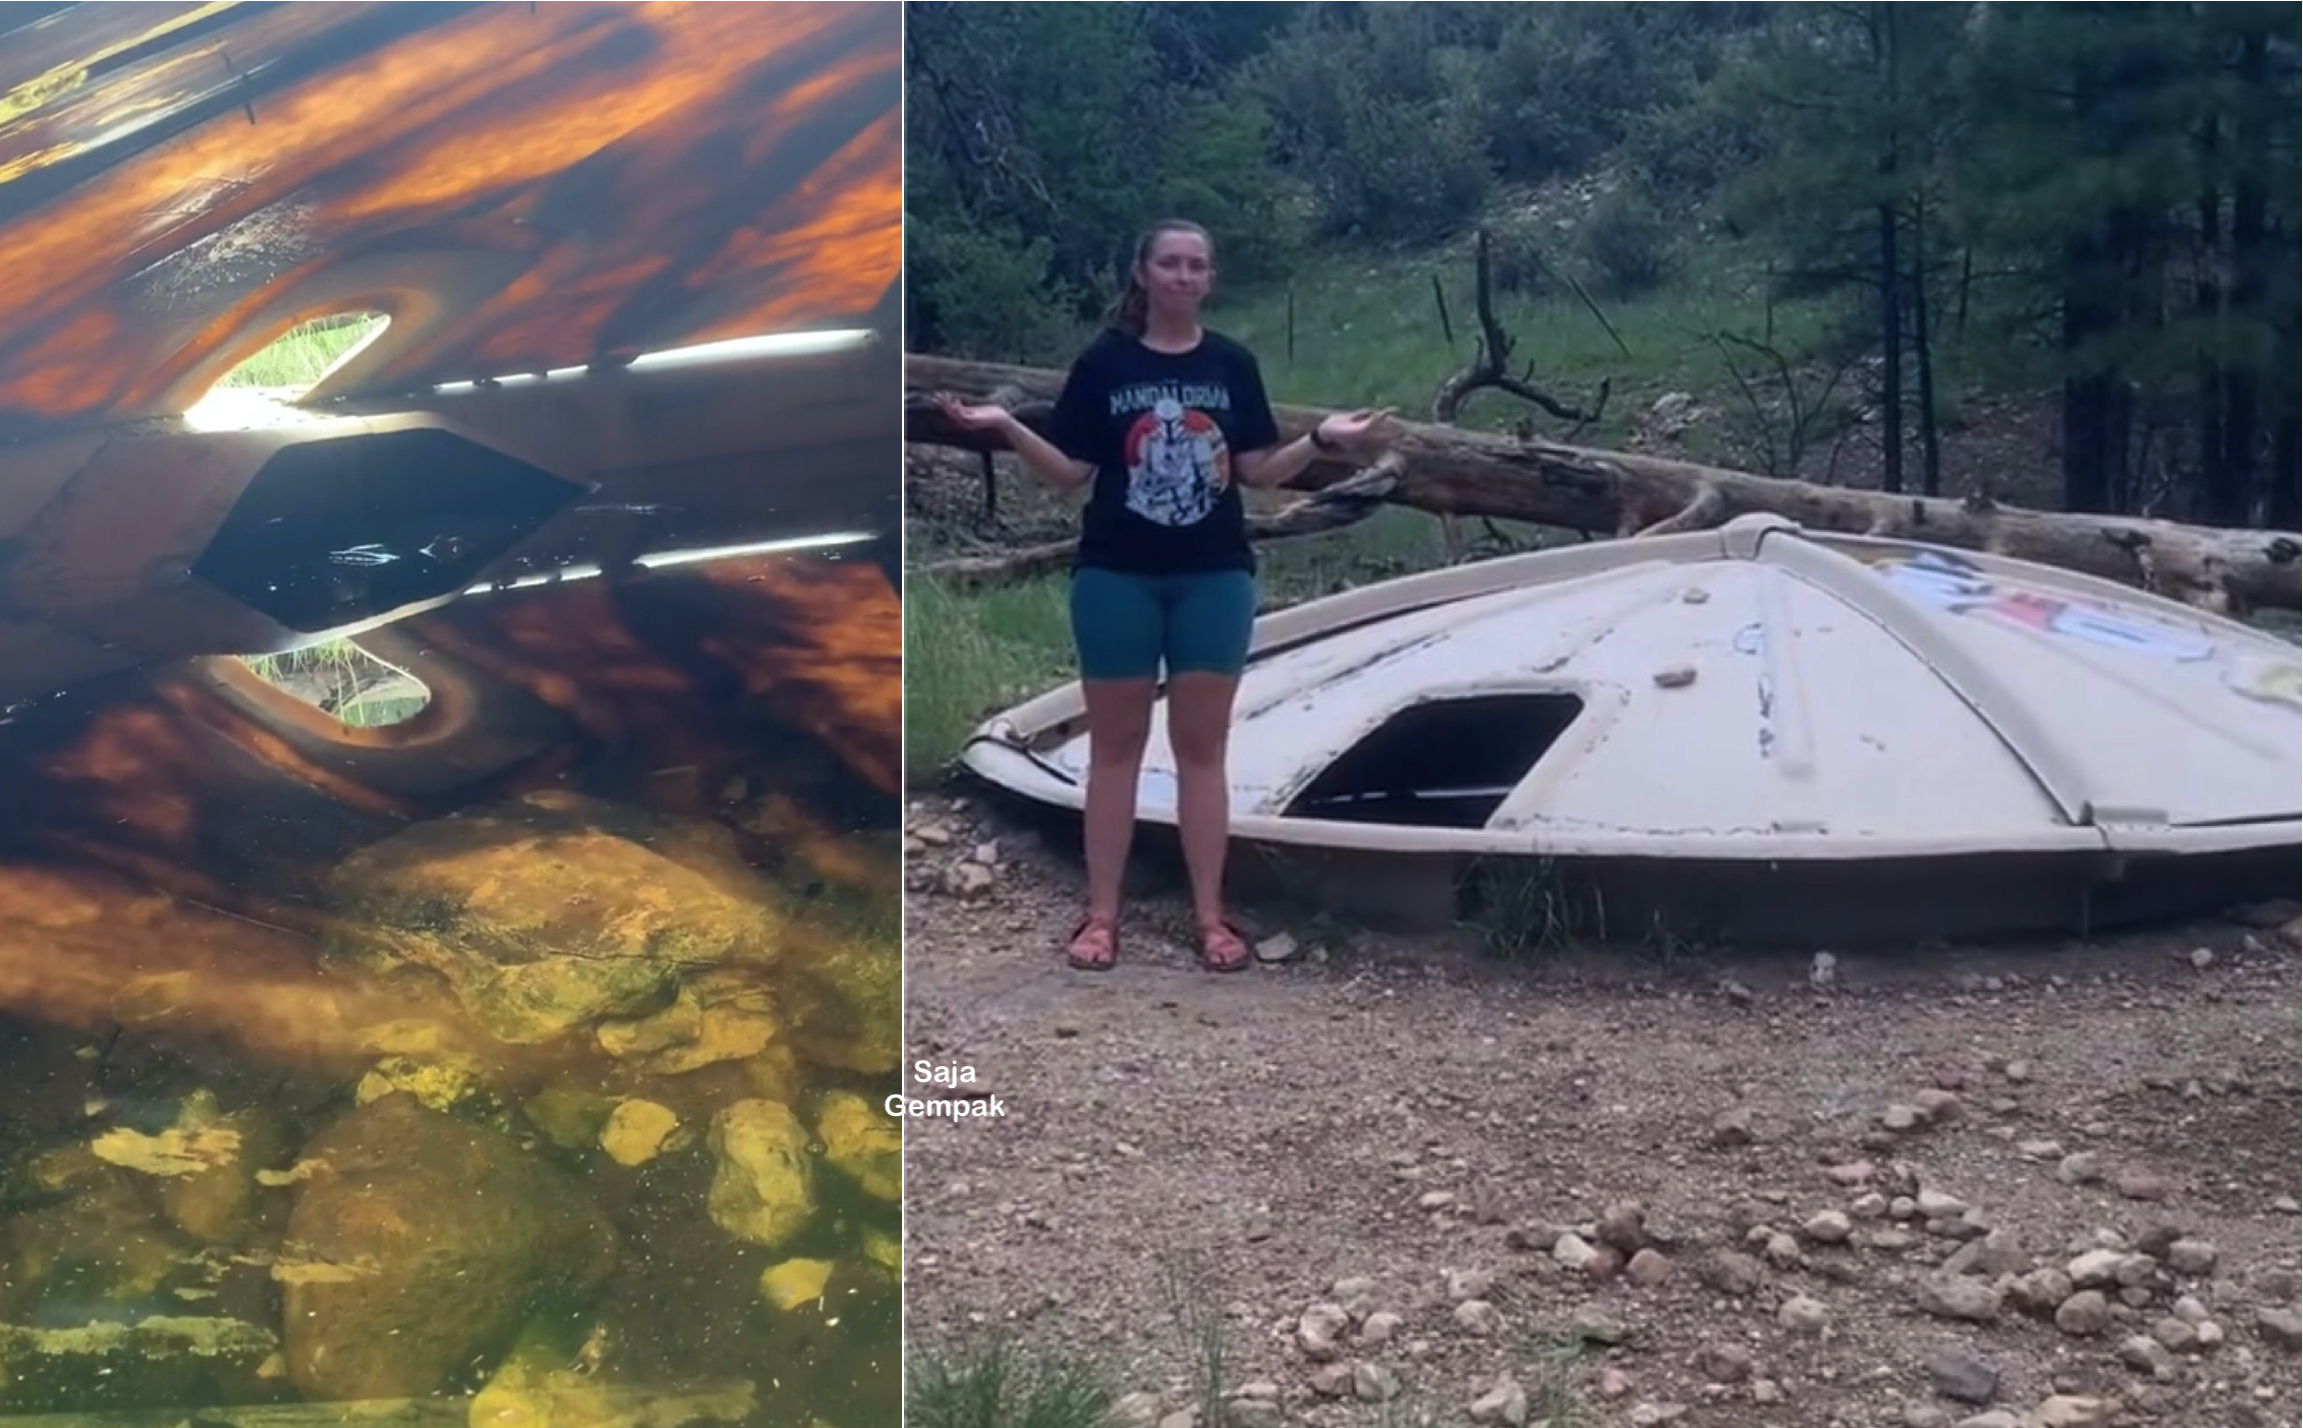 Piring Terbang UFO Ditemui Mendarat Di Belakang Rumah, Netizen Perasan Seakan Ada Mata Berkelipan Di Dalamnya - sajagempak.com